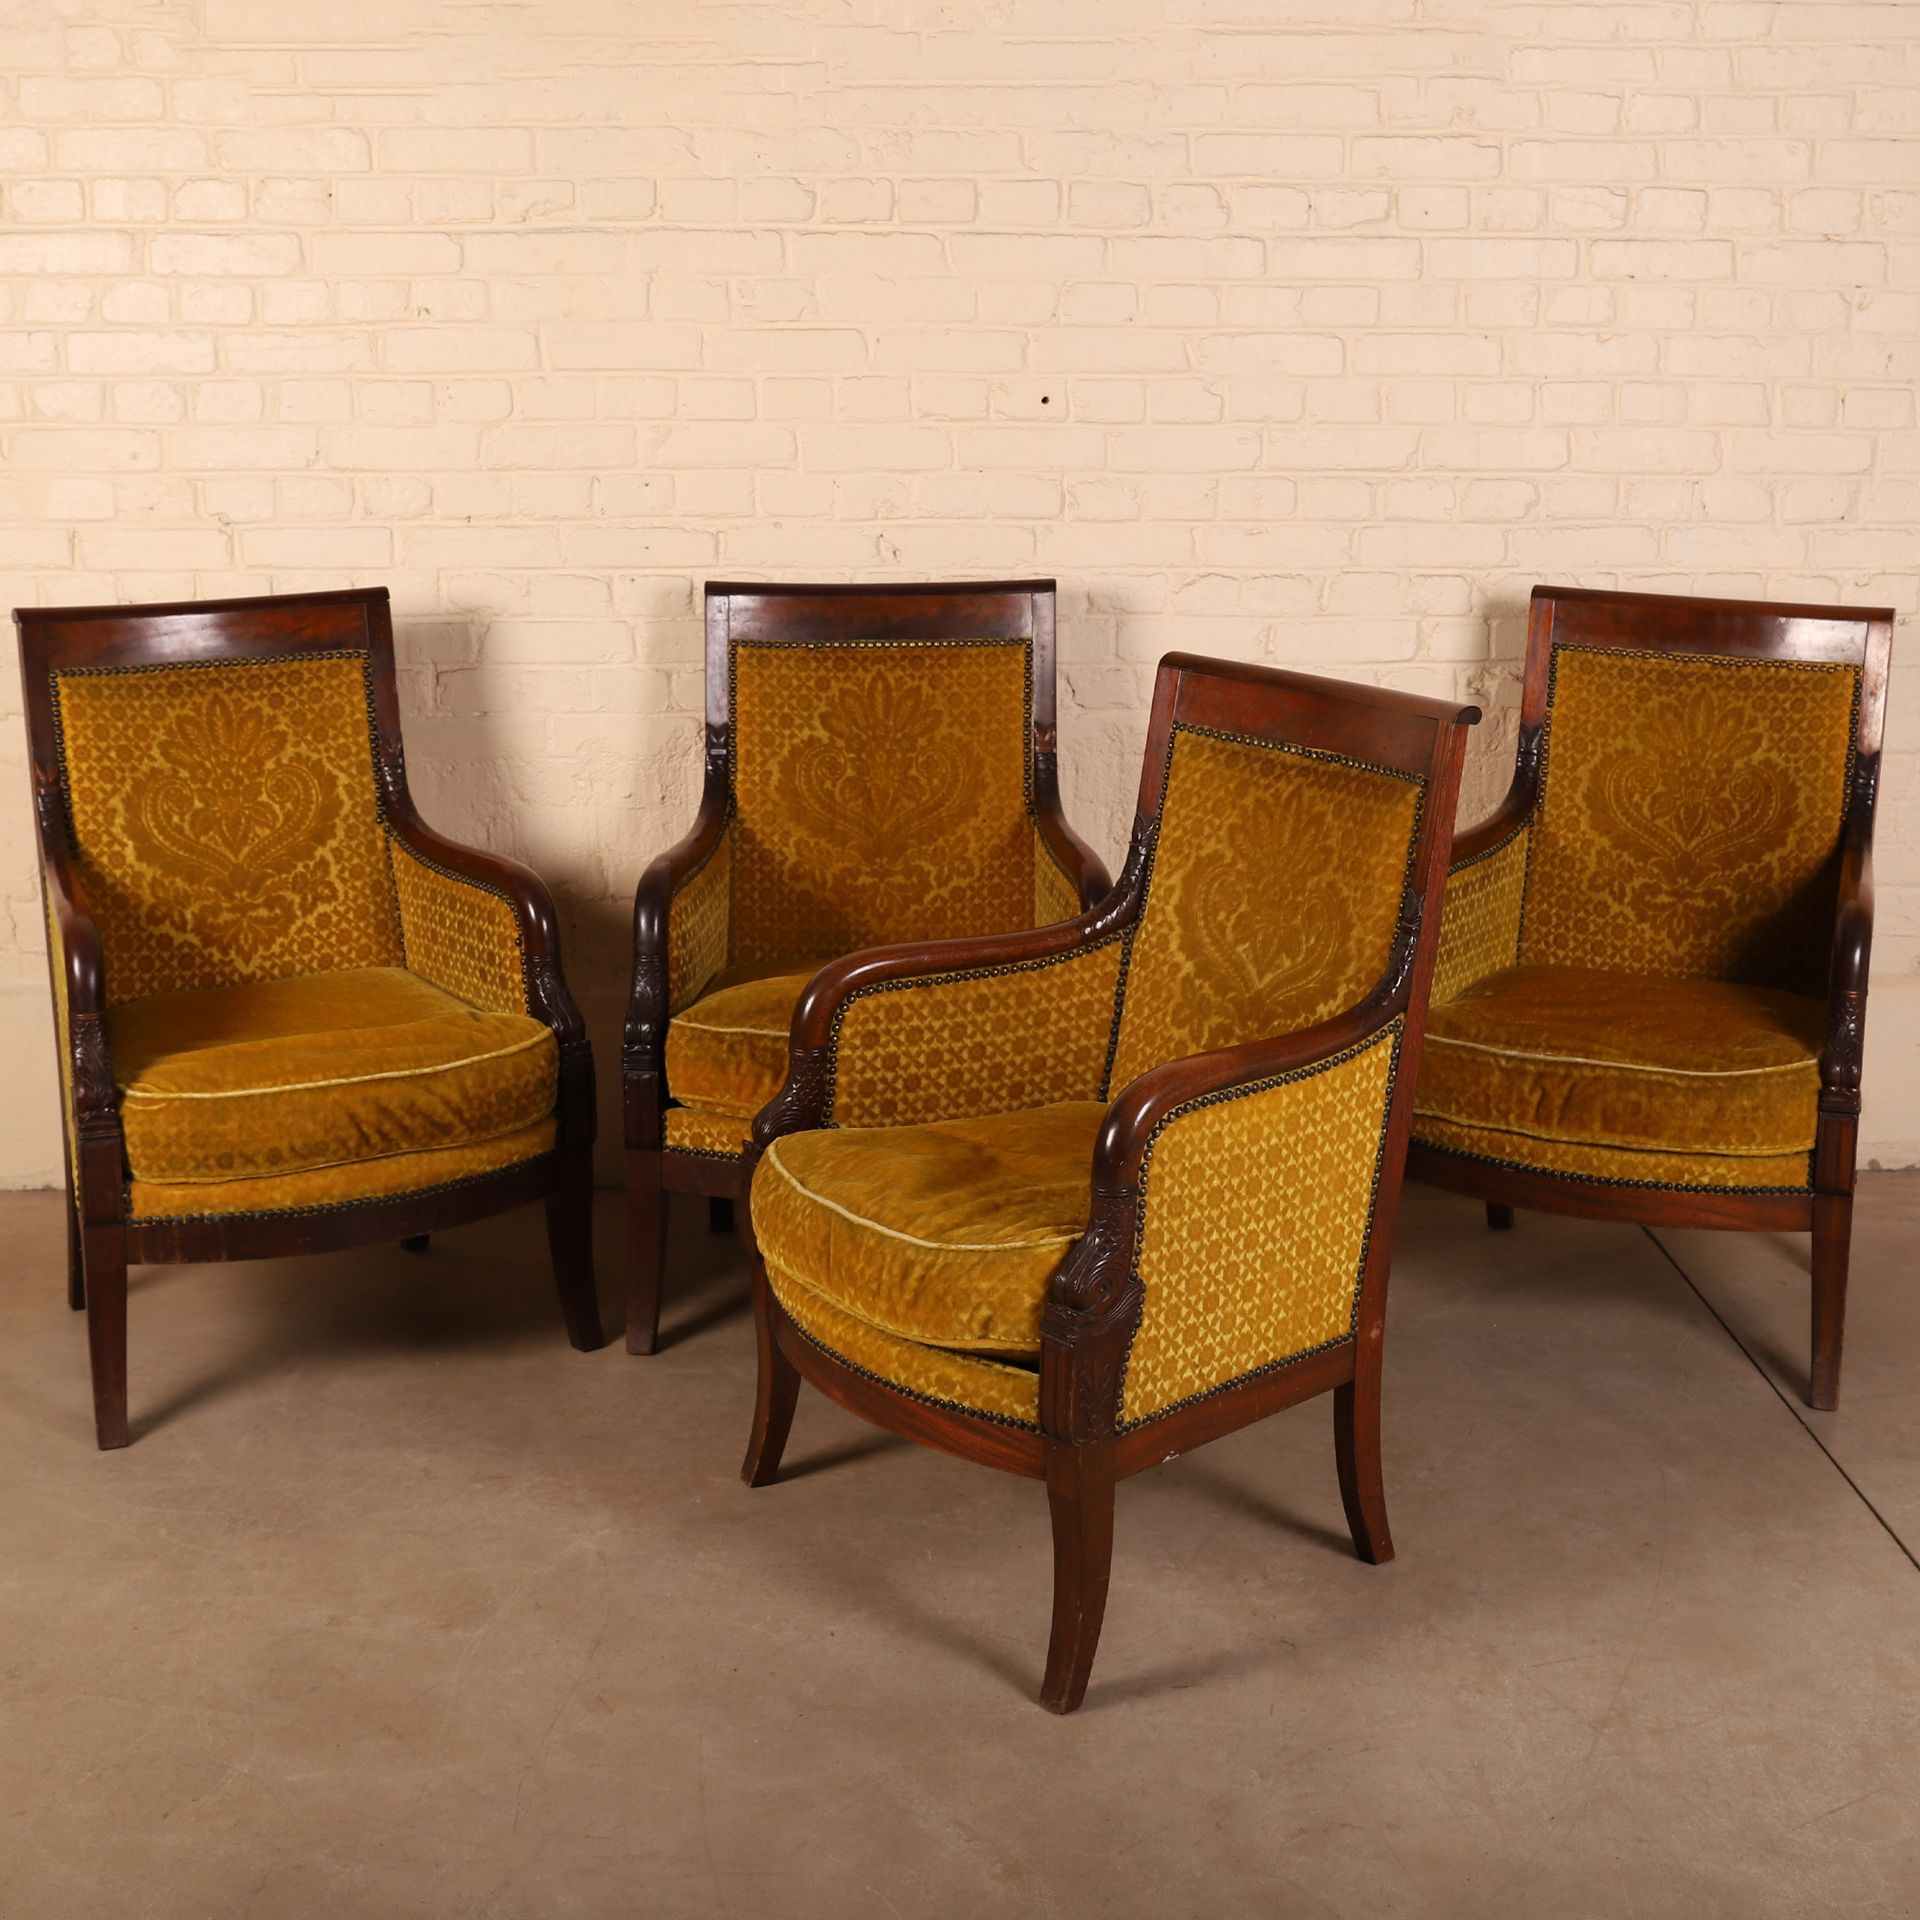 Null 一套四把帝国椅，19世纪

芥末黄软垫

扶手的把手代表了一个由两部分组成的风格化的海豚

92 x 64 x 48 厘米

使用和修复的条件